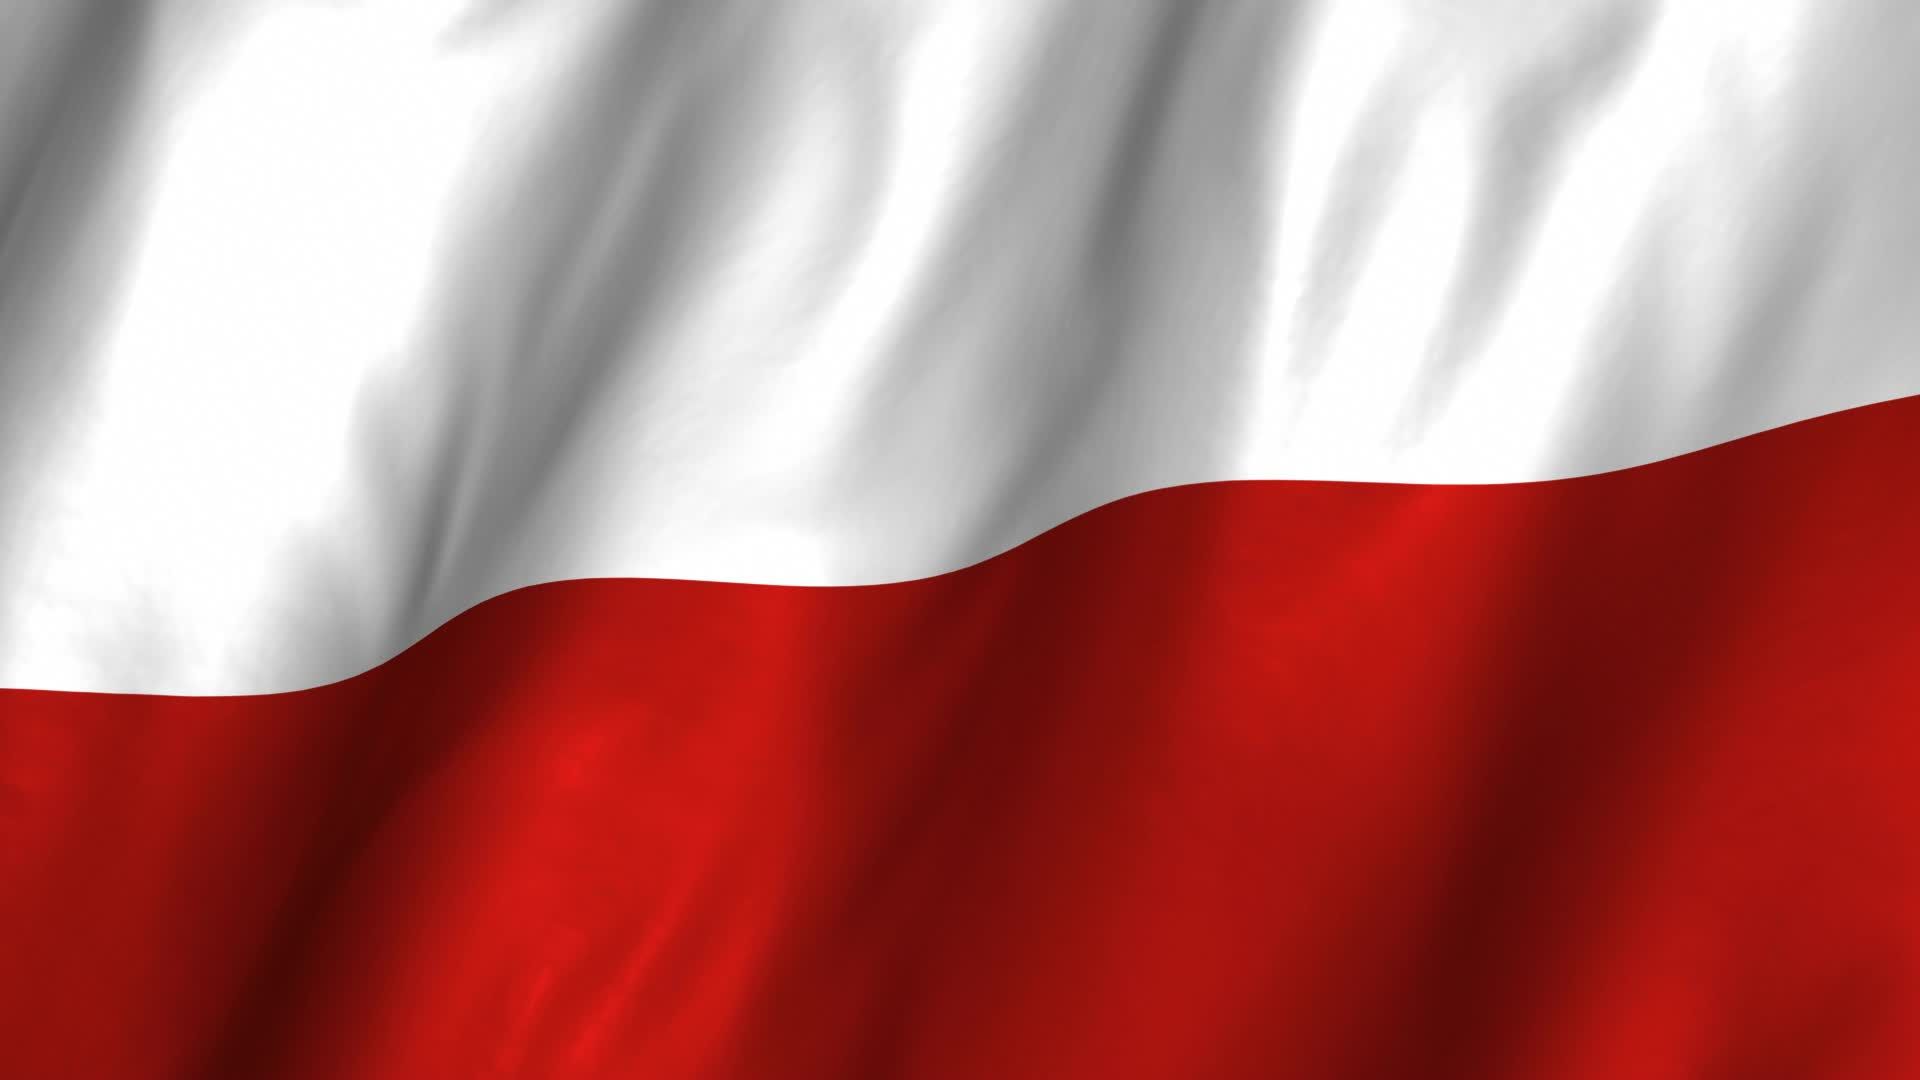 Backgrounds For Polish Flag Facebook Background - Polish Flag Background , HD Wallpaper & Backgrounds